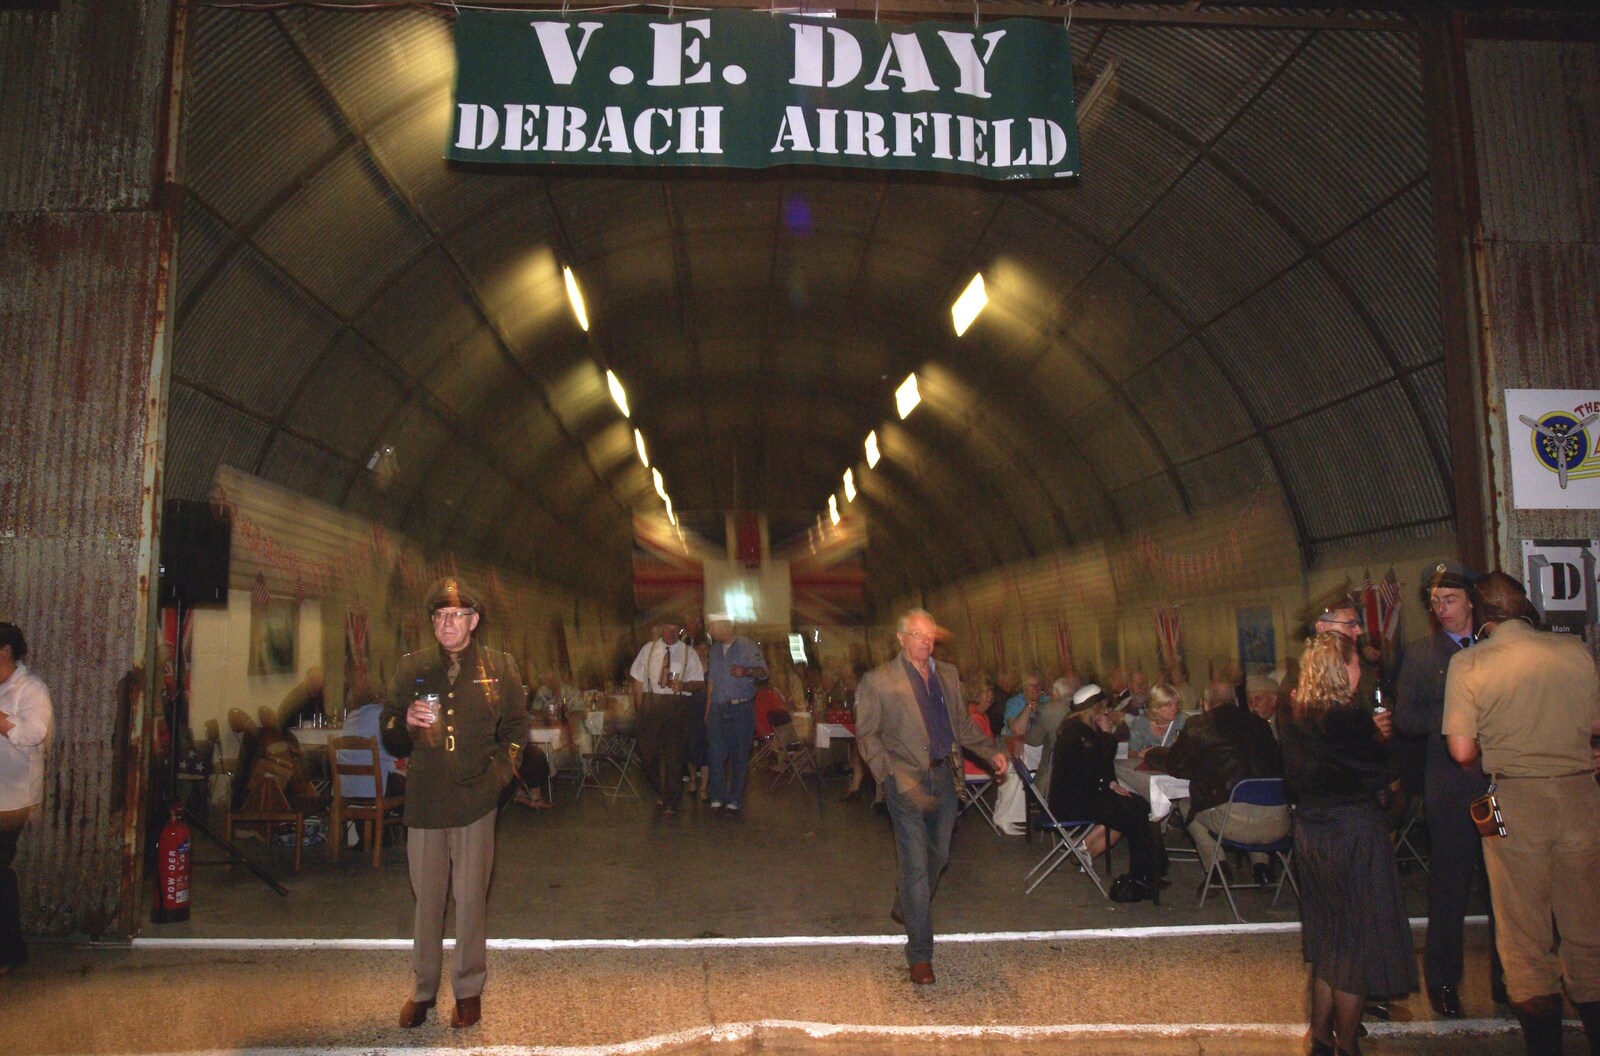 A 1940s Airfield Hangar Dance, Debach, Suffolk - 9th June 2007: It's V.E. Day at Debach Airfield